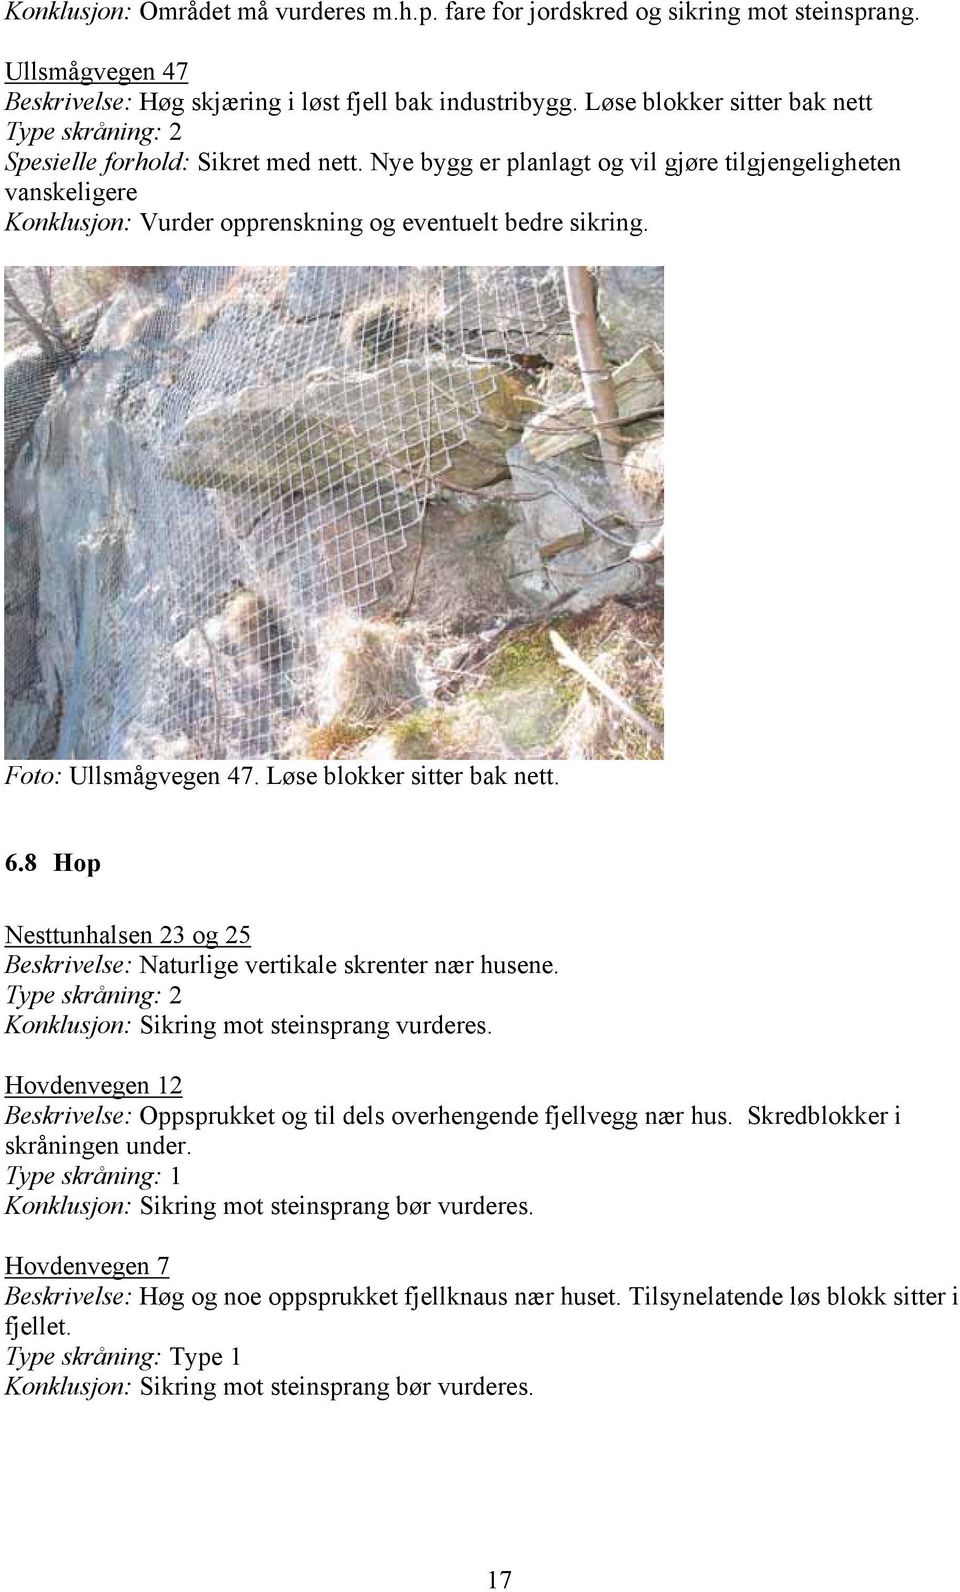 Foto: Ullsmågvegen 47. Løse blokker sitter bak nett. 6.8 Hop Nesttunhalsen 23 og 25 Beskrivelse: Naturlige vertikale skrenter nær husene. Konklusjon: Sikring mot steinsprang vurderes.